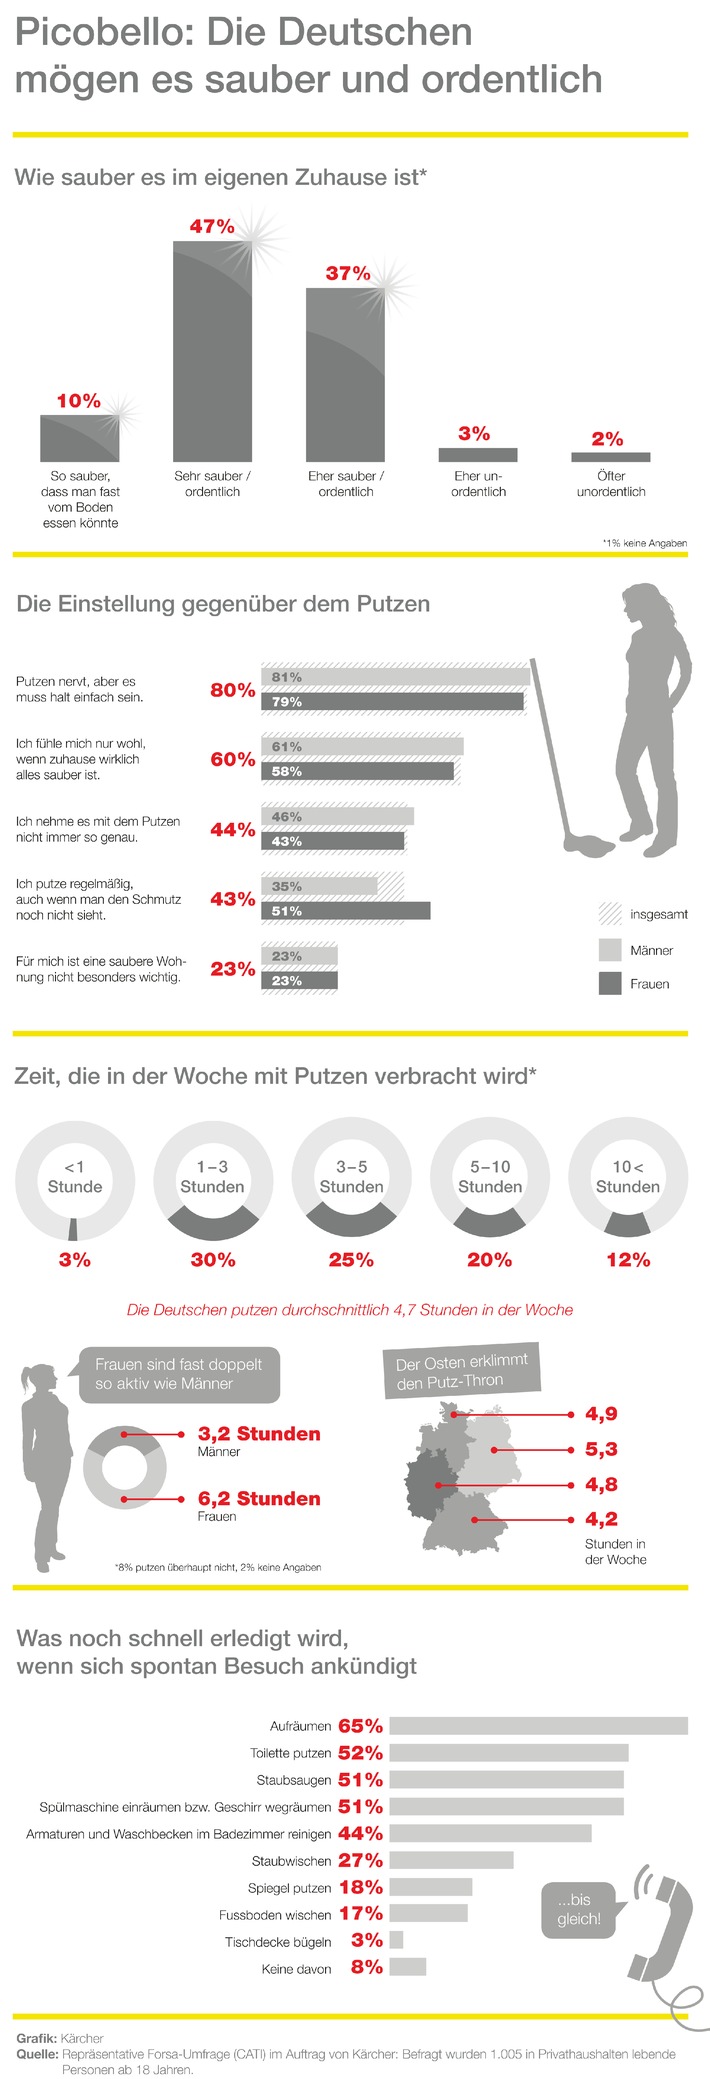 Forsa-Umfrage im Auftrag von Kärcher / Picobello: Die Deutschen mögen es sauber und ordentlich